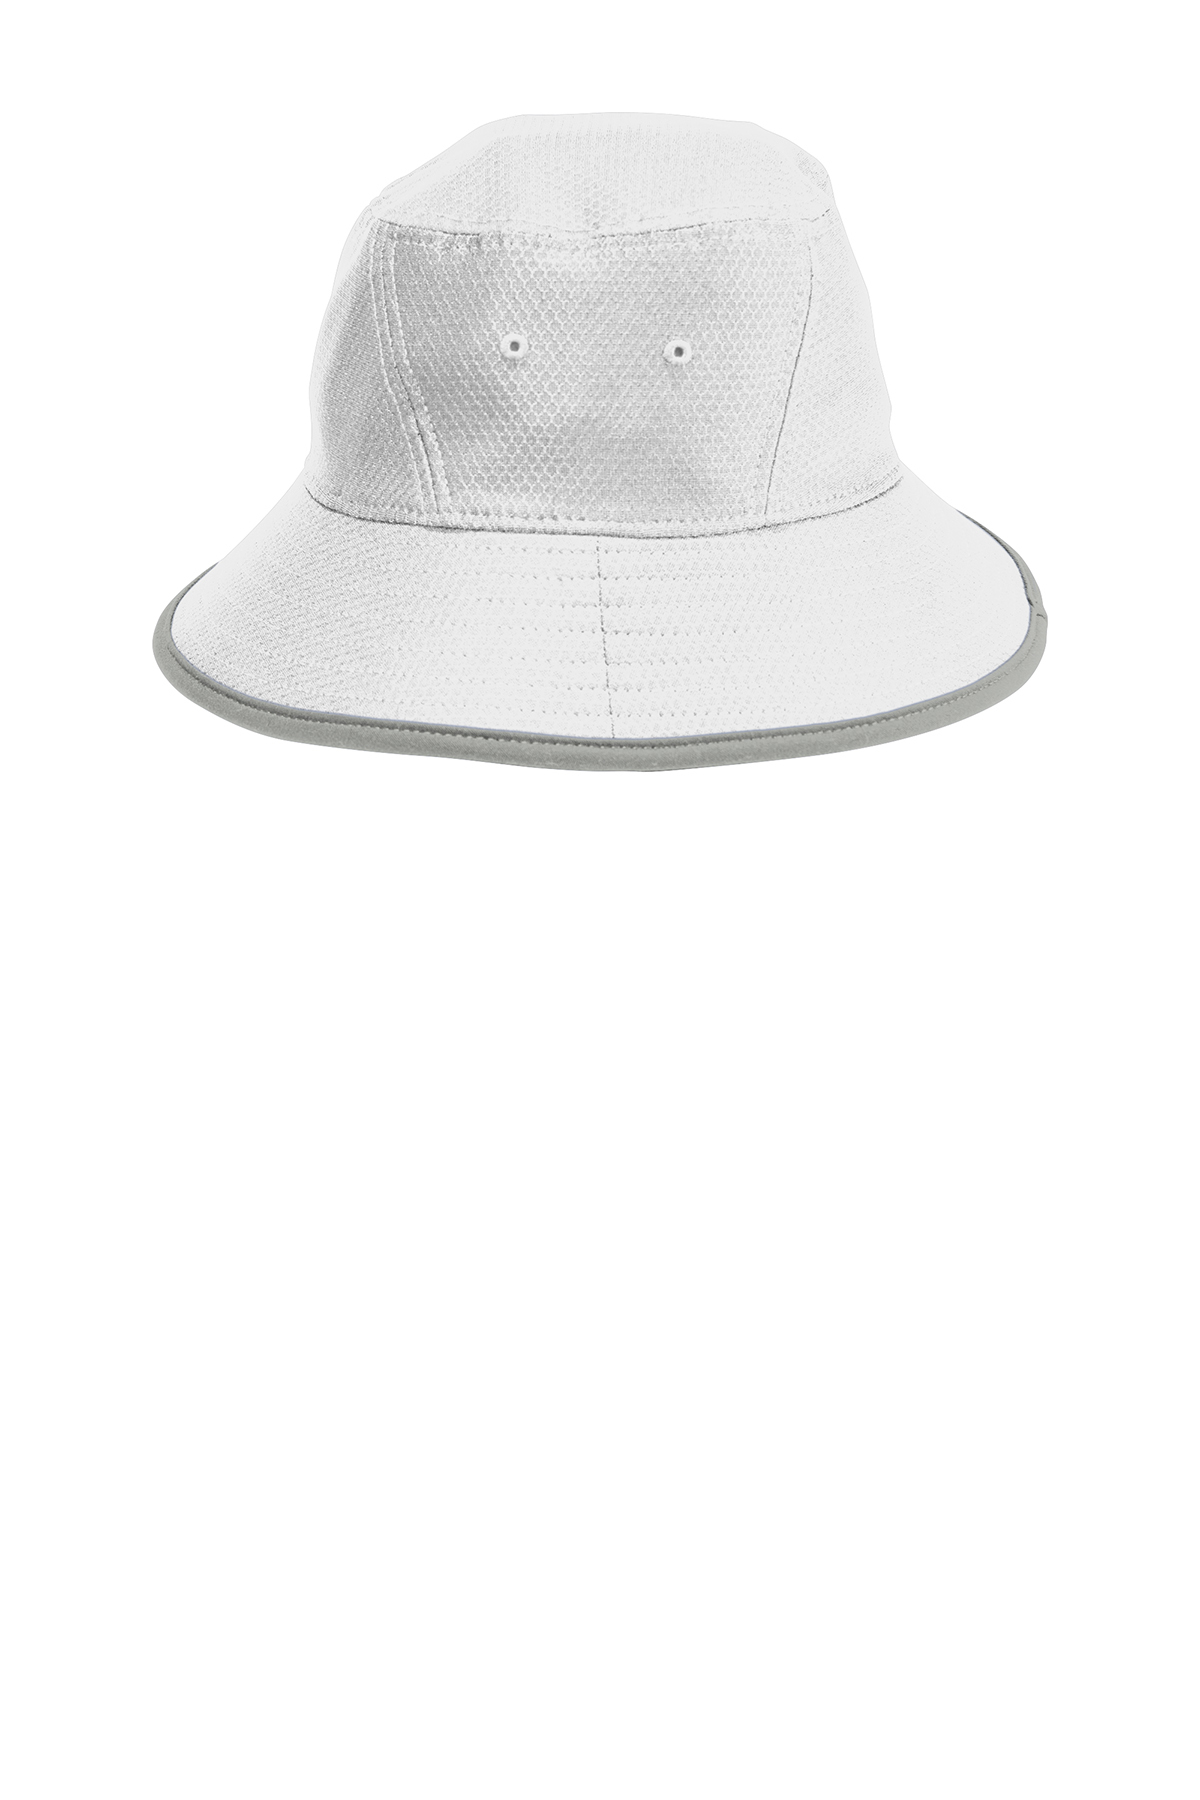 Dailygram Bucket Hat S00 - Accessories